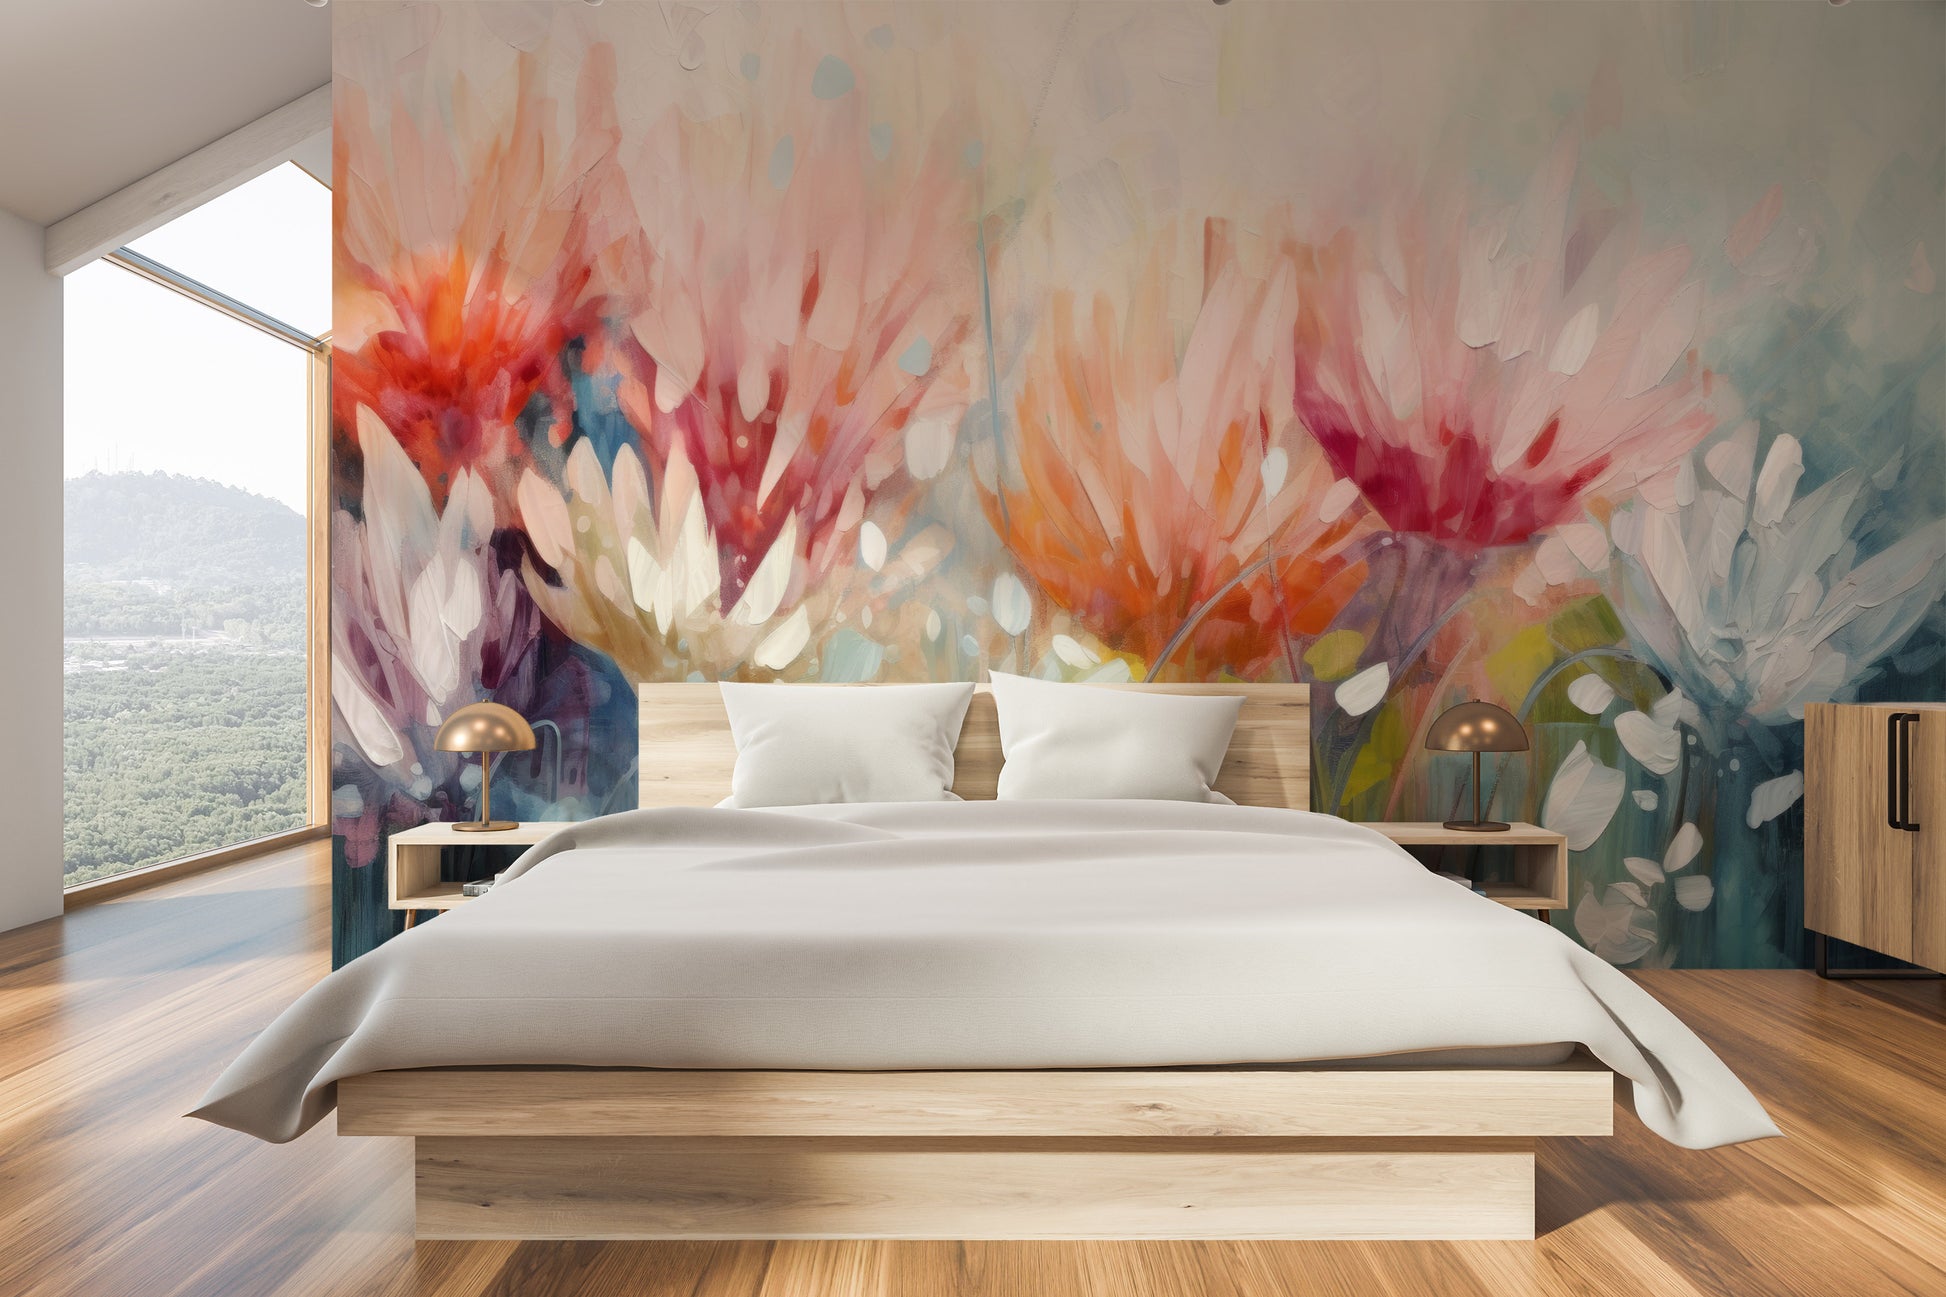 Fototapeta malowana o nazwie Fiery Petal Fusion pokazana w aranżacji wnętrza.